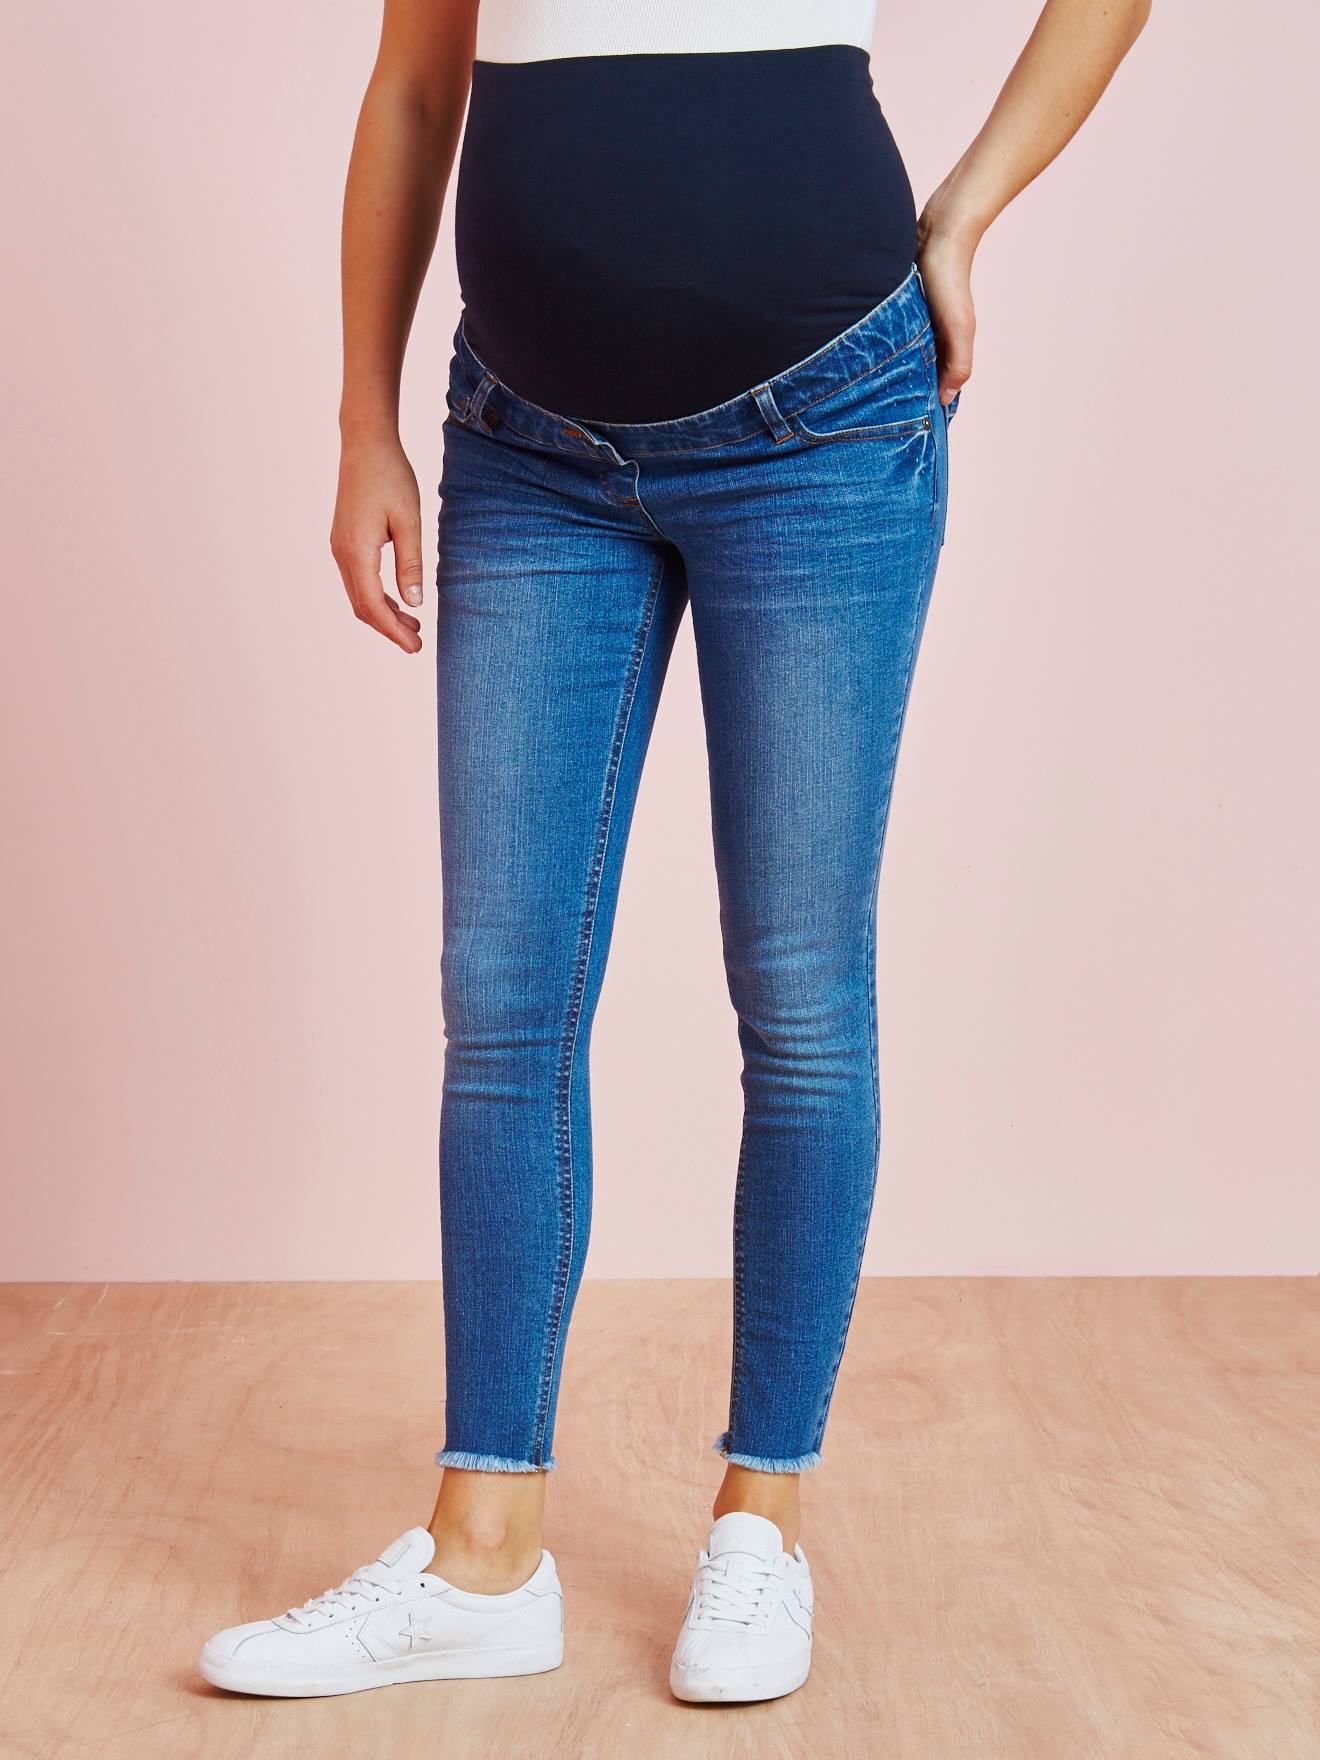 Vertbaudet Jeans-Shorts für die Schwangerschaft